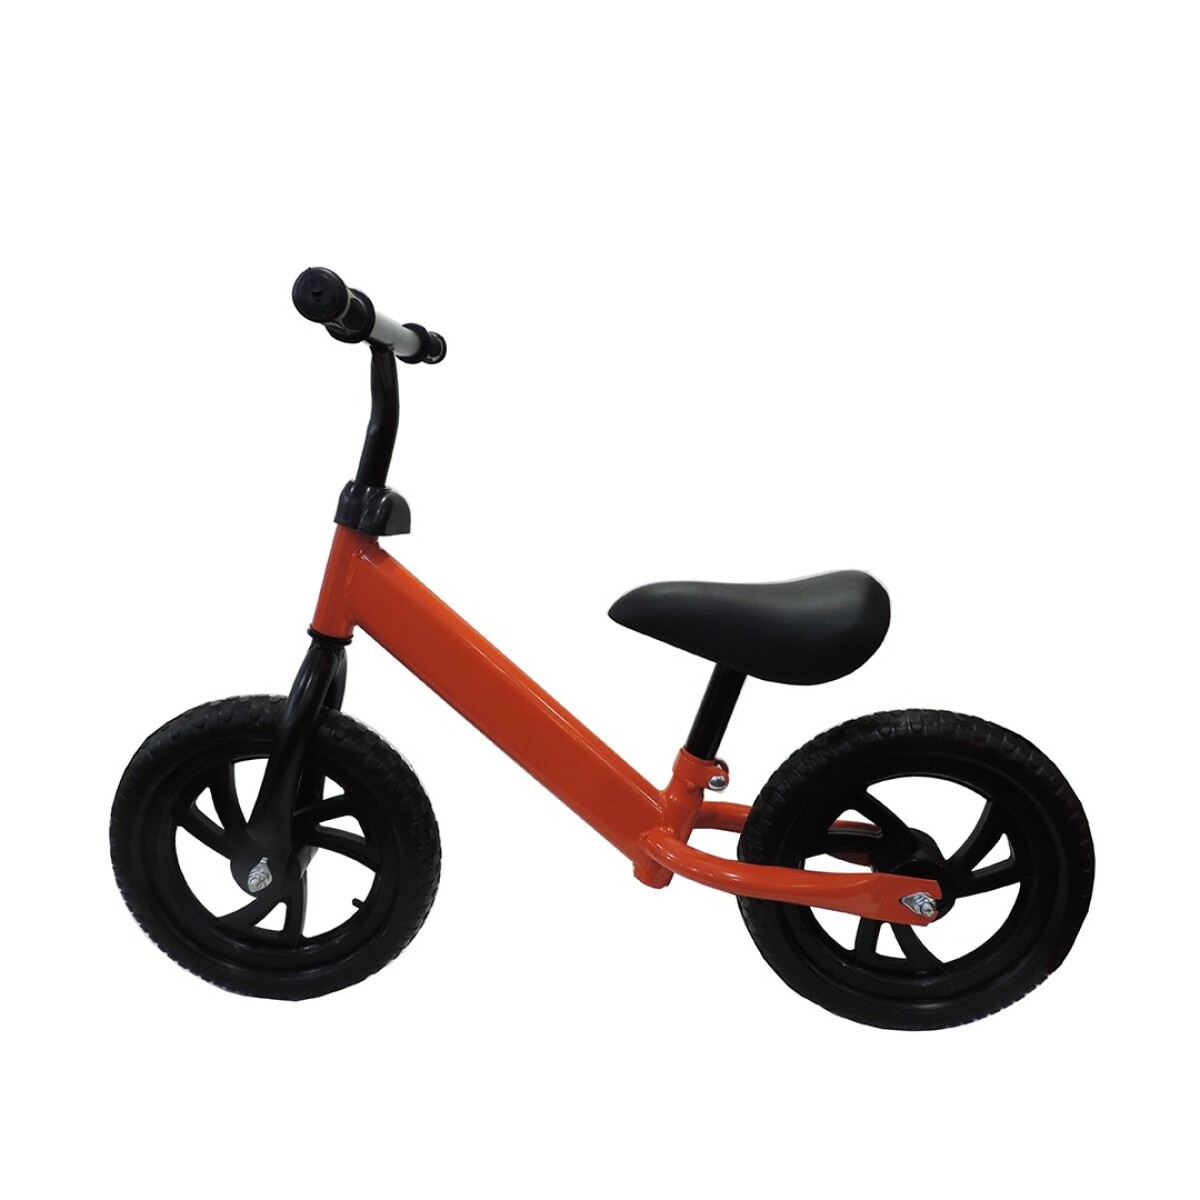 Bicicleta infantil chivita sin pedal resistente color - NARANJA 